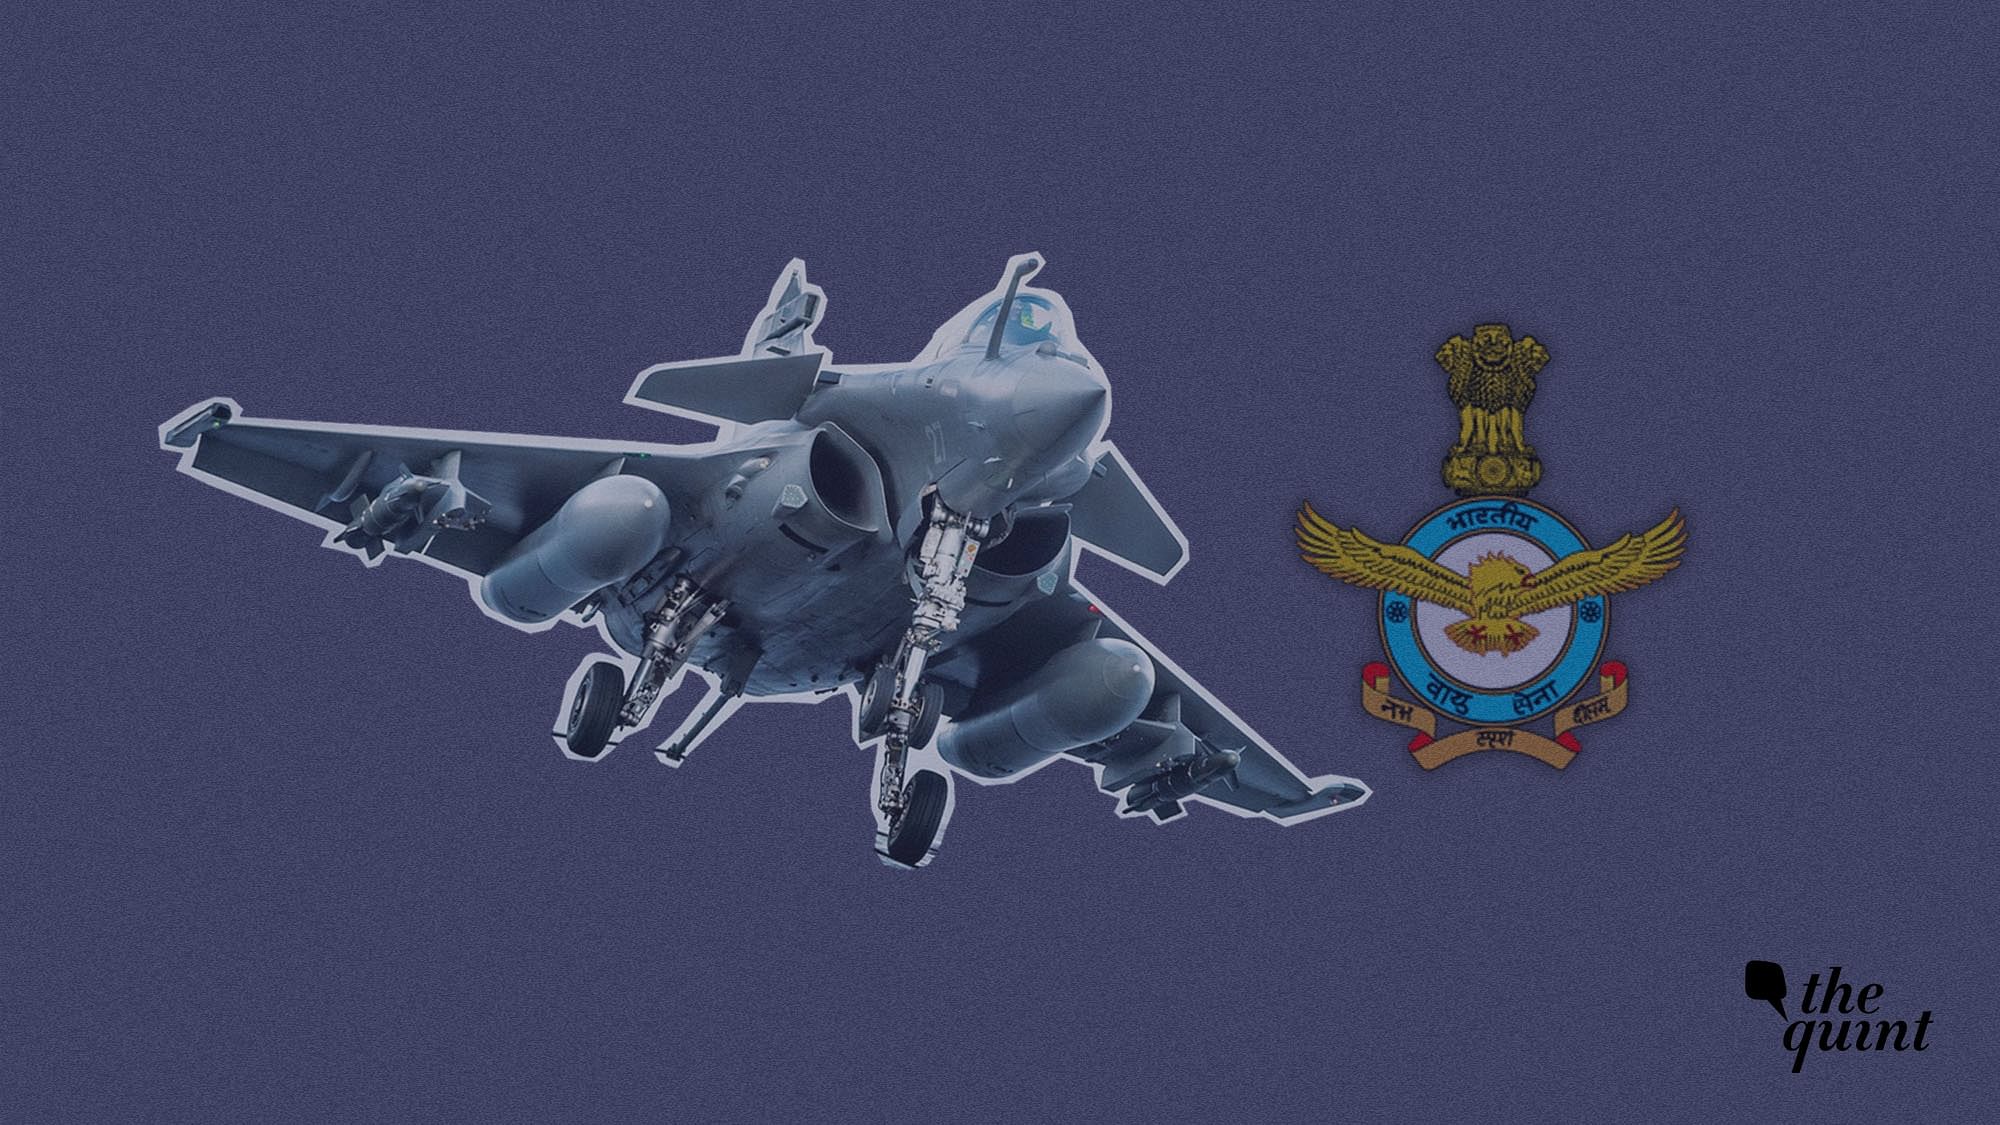 1971 में पाकिस्तान की धरती पर भारतीय वायुसेना की ओर से बड़ी कार्रवाई की गई थी.